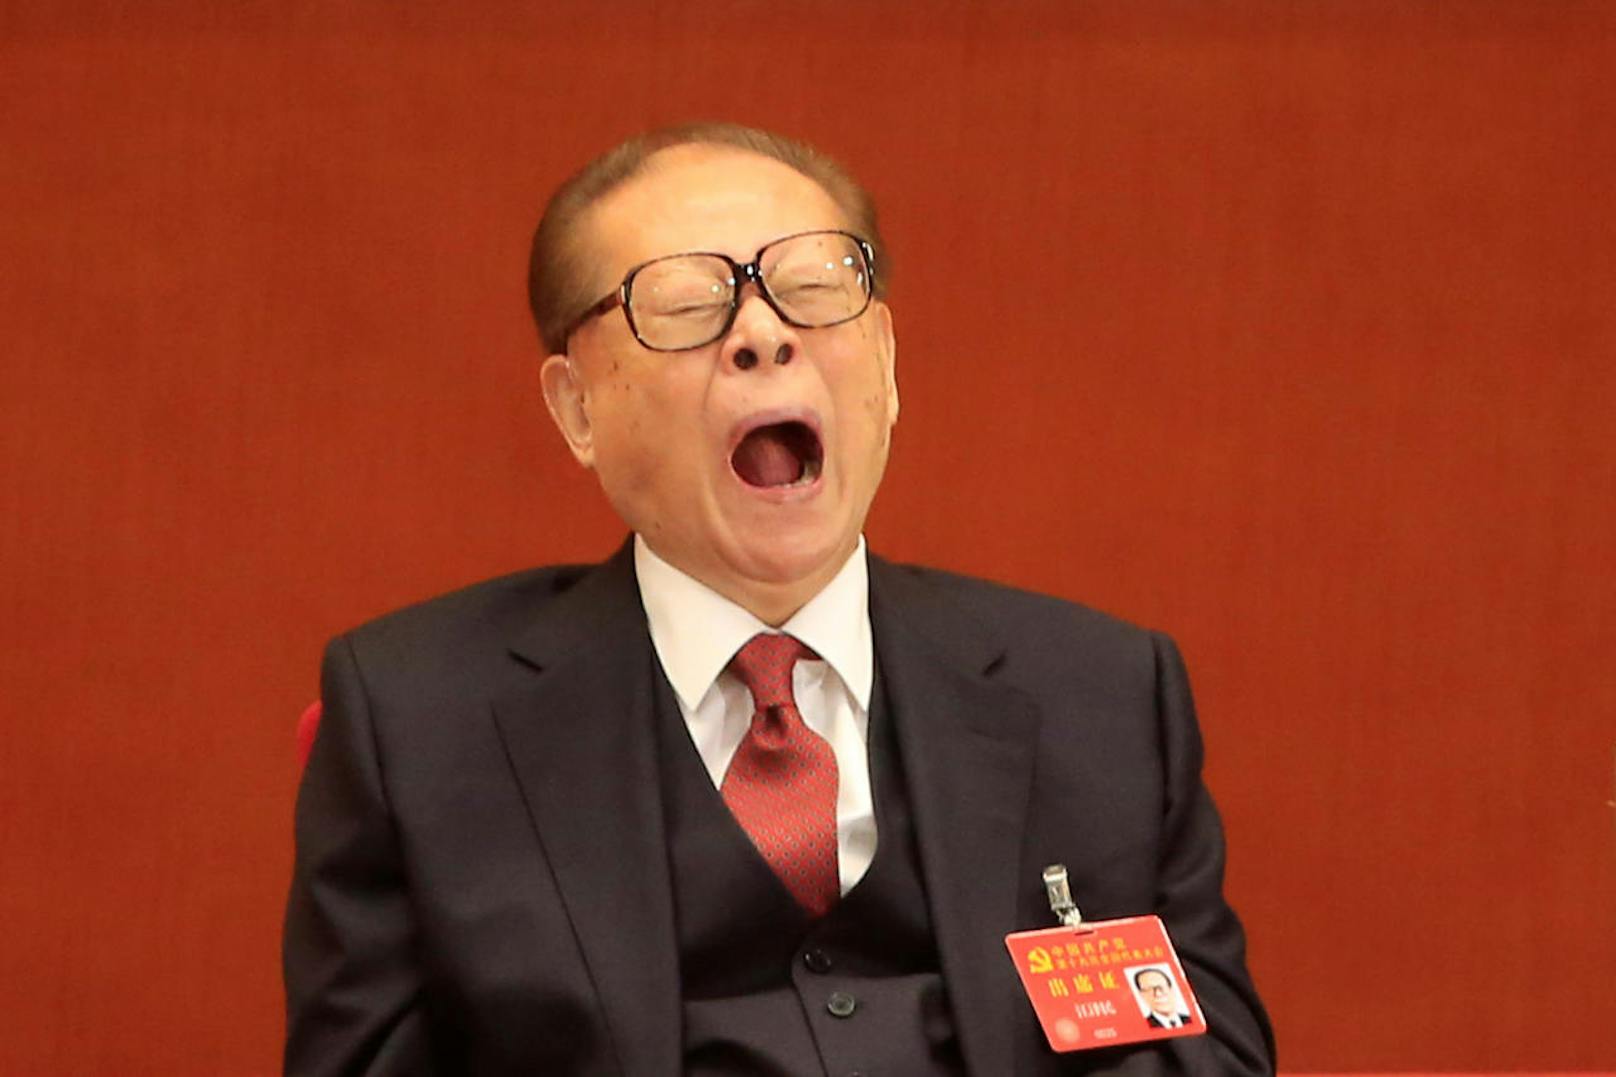 Chians früherer Präsident Jiang Zemin wurde für tot gehalten, nachdem Gerüchte über sein Ableben kursierten. Beim 19. Kongress der Kommunistischen Partei Chinas zeigte er sich überraschenderweise quicklebendig.